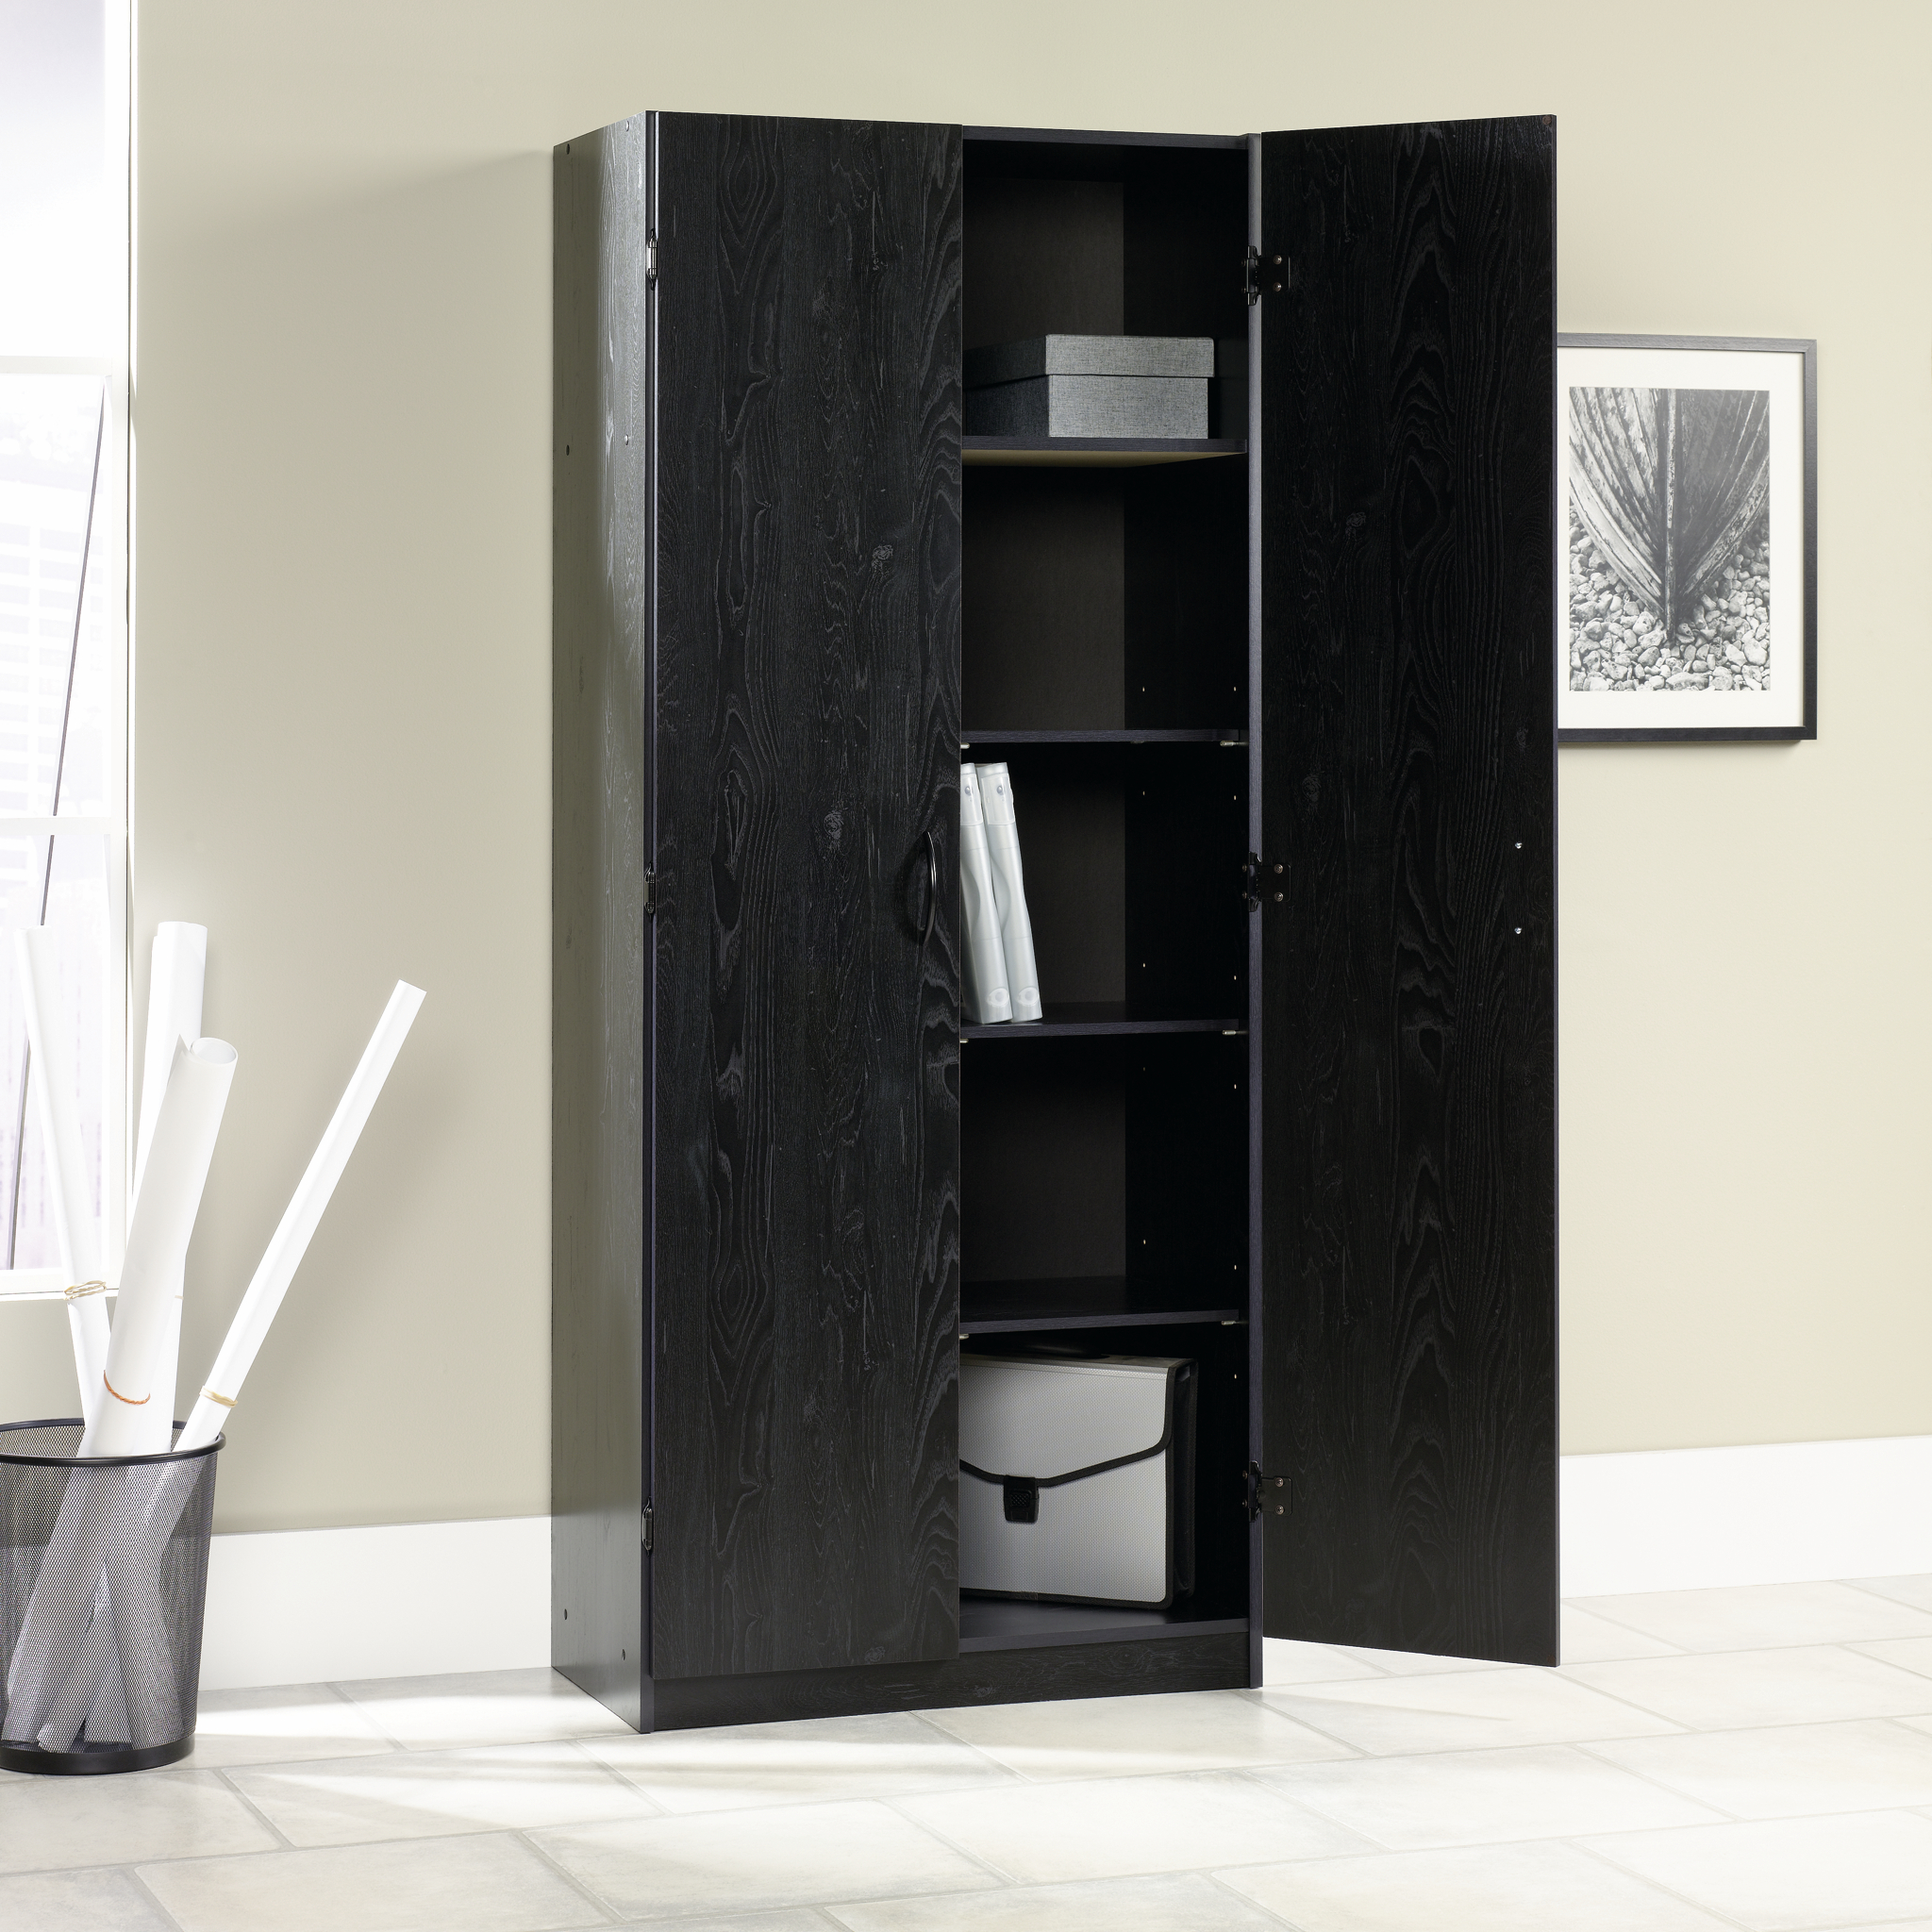 Sauder Select Storage Cabinet, Ebony Ash Finish - image 3 of 6